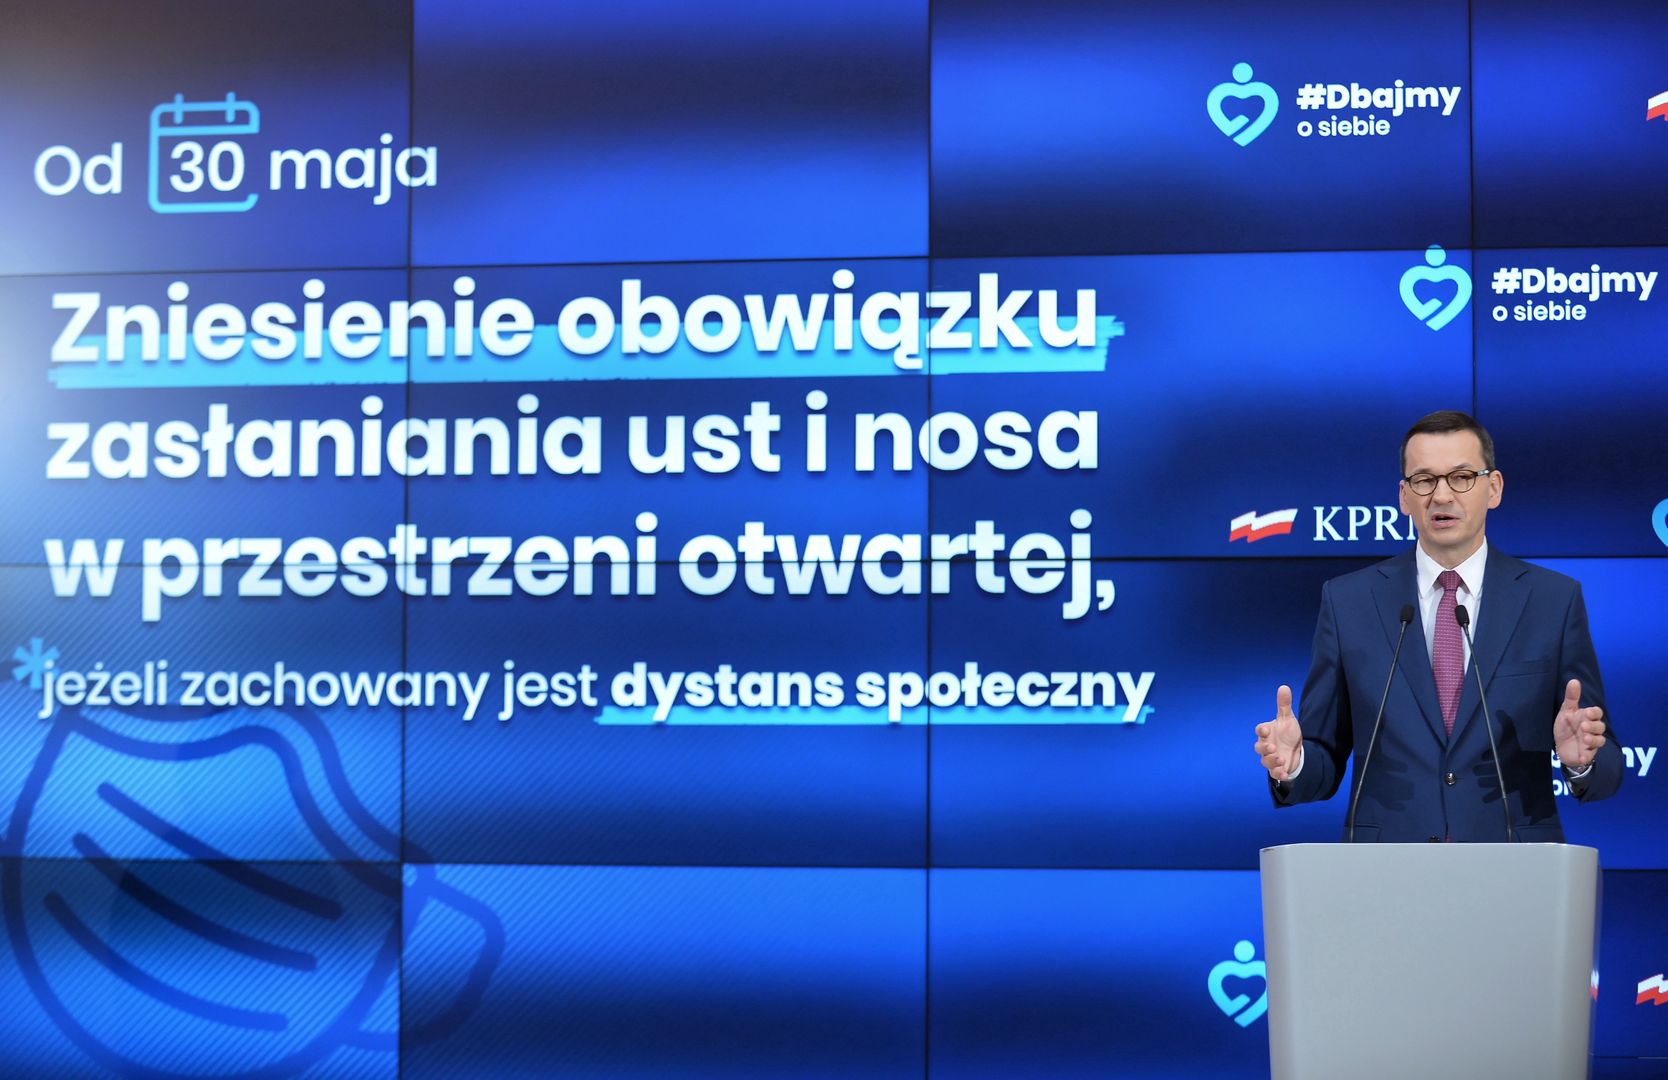 Poznaliśmy szczegóły 4 etapu odmrażania polskiej gospodarki